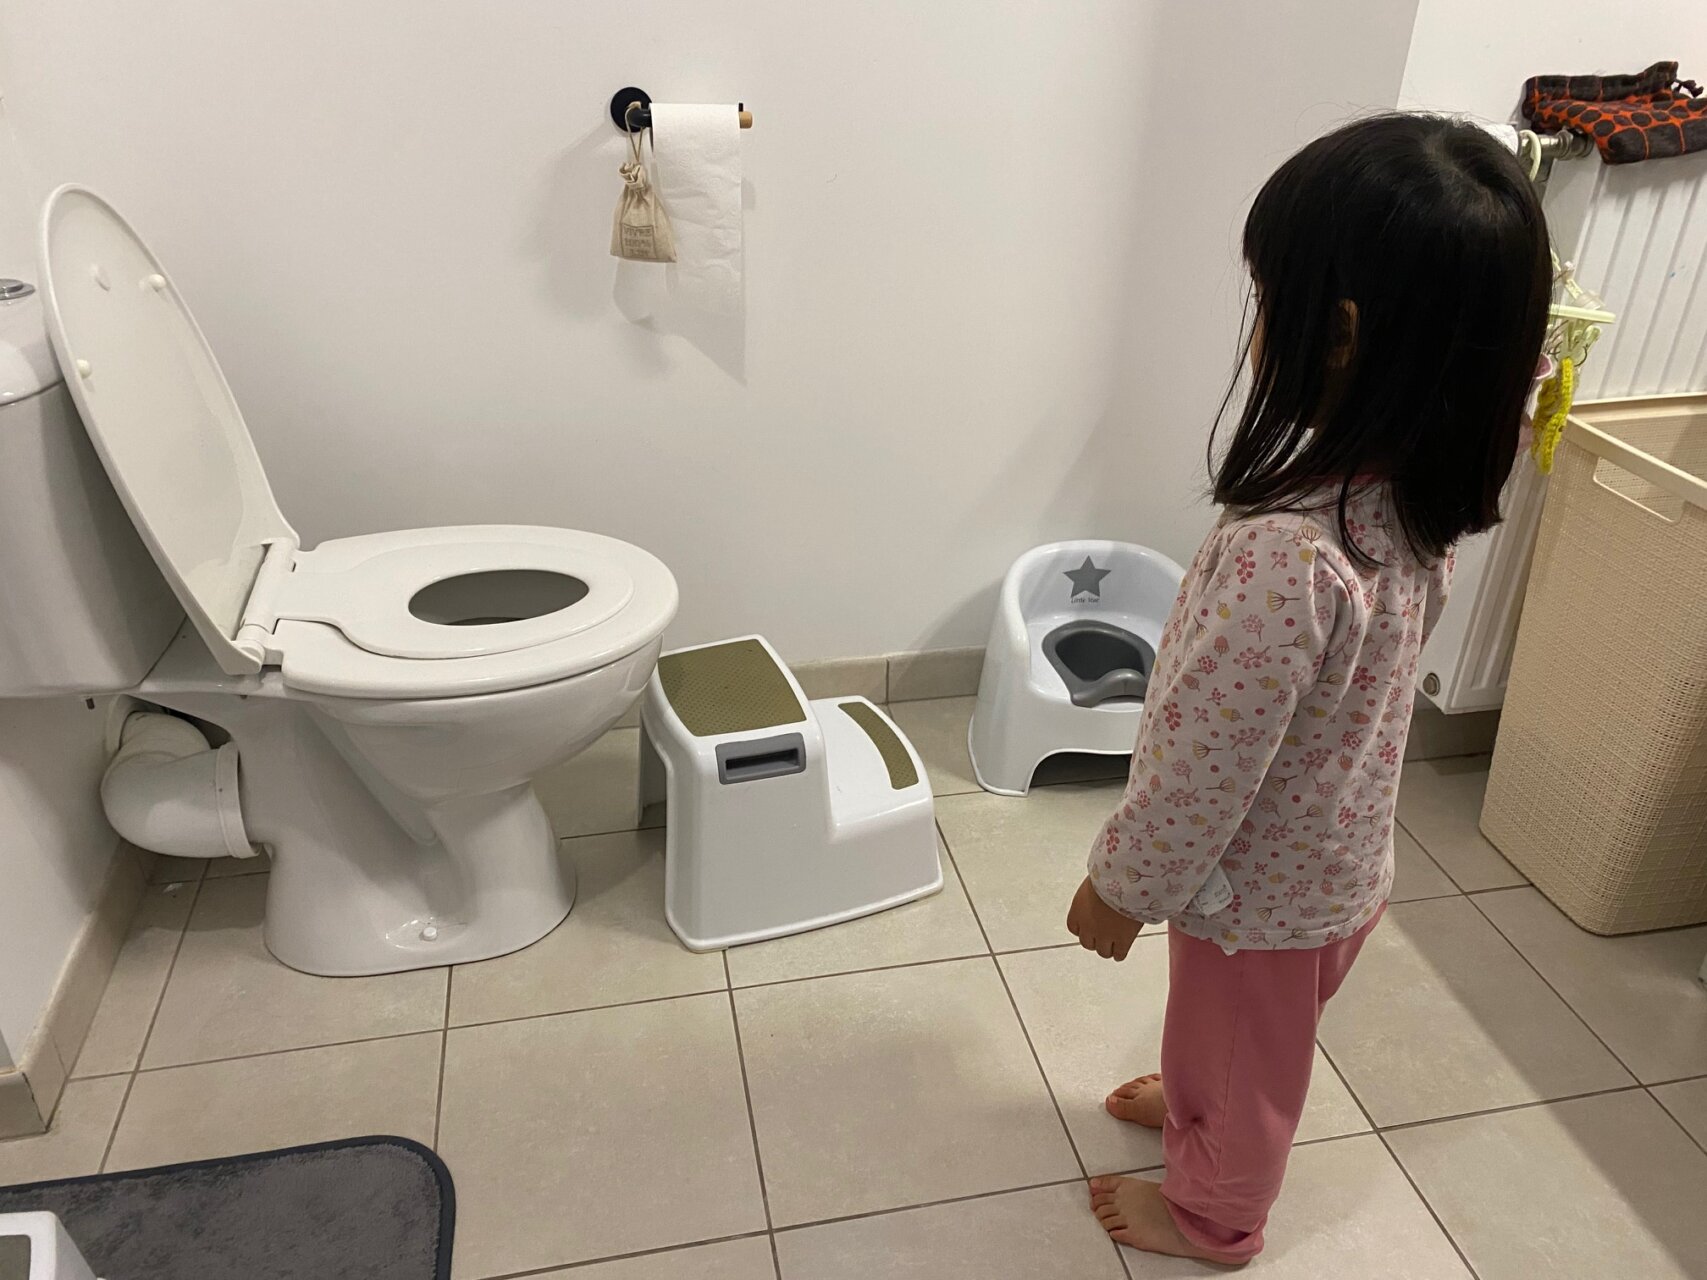 子育て日仏トイレトレーニングの違い。